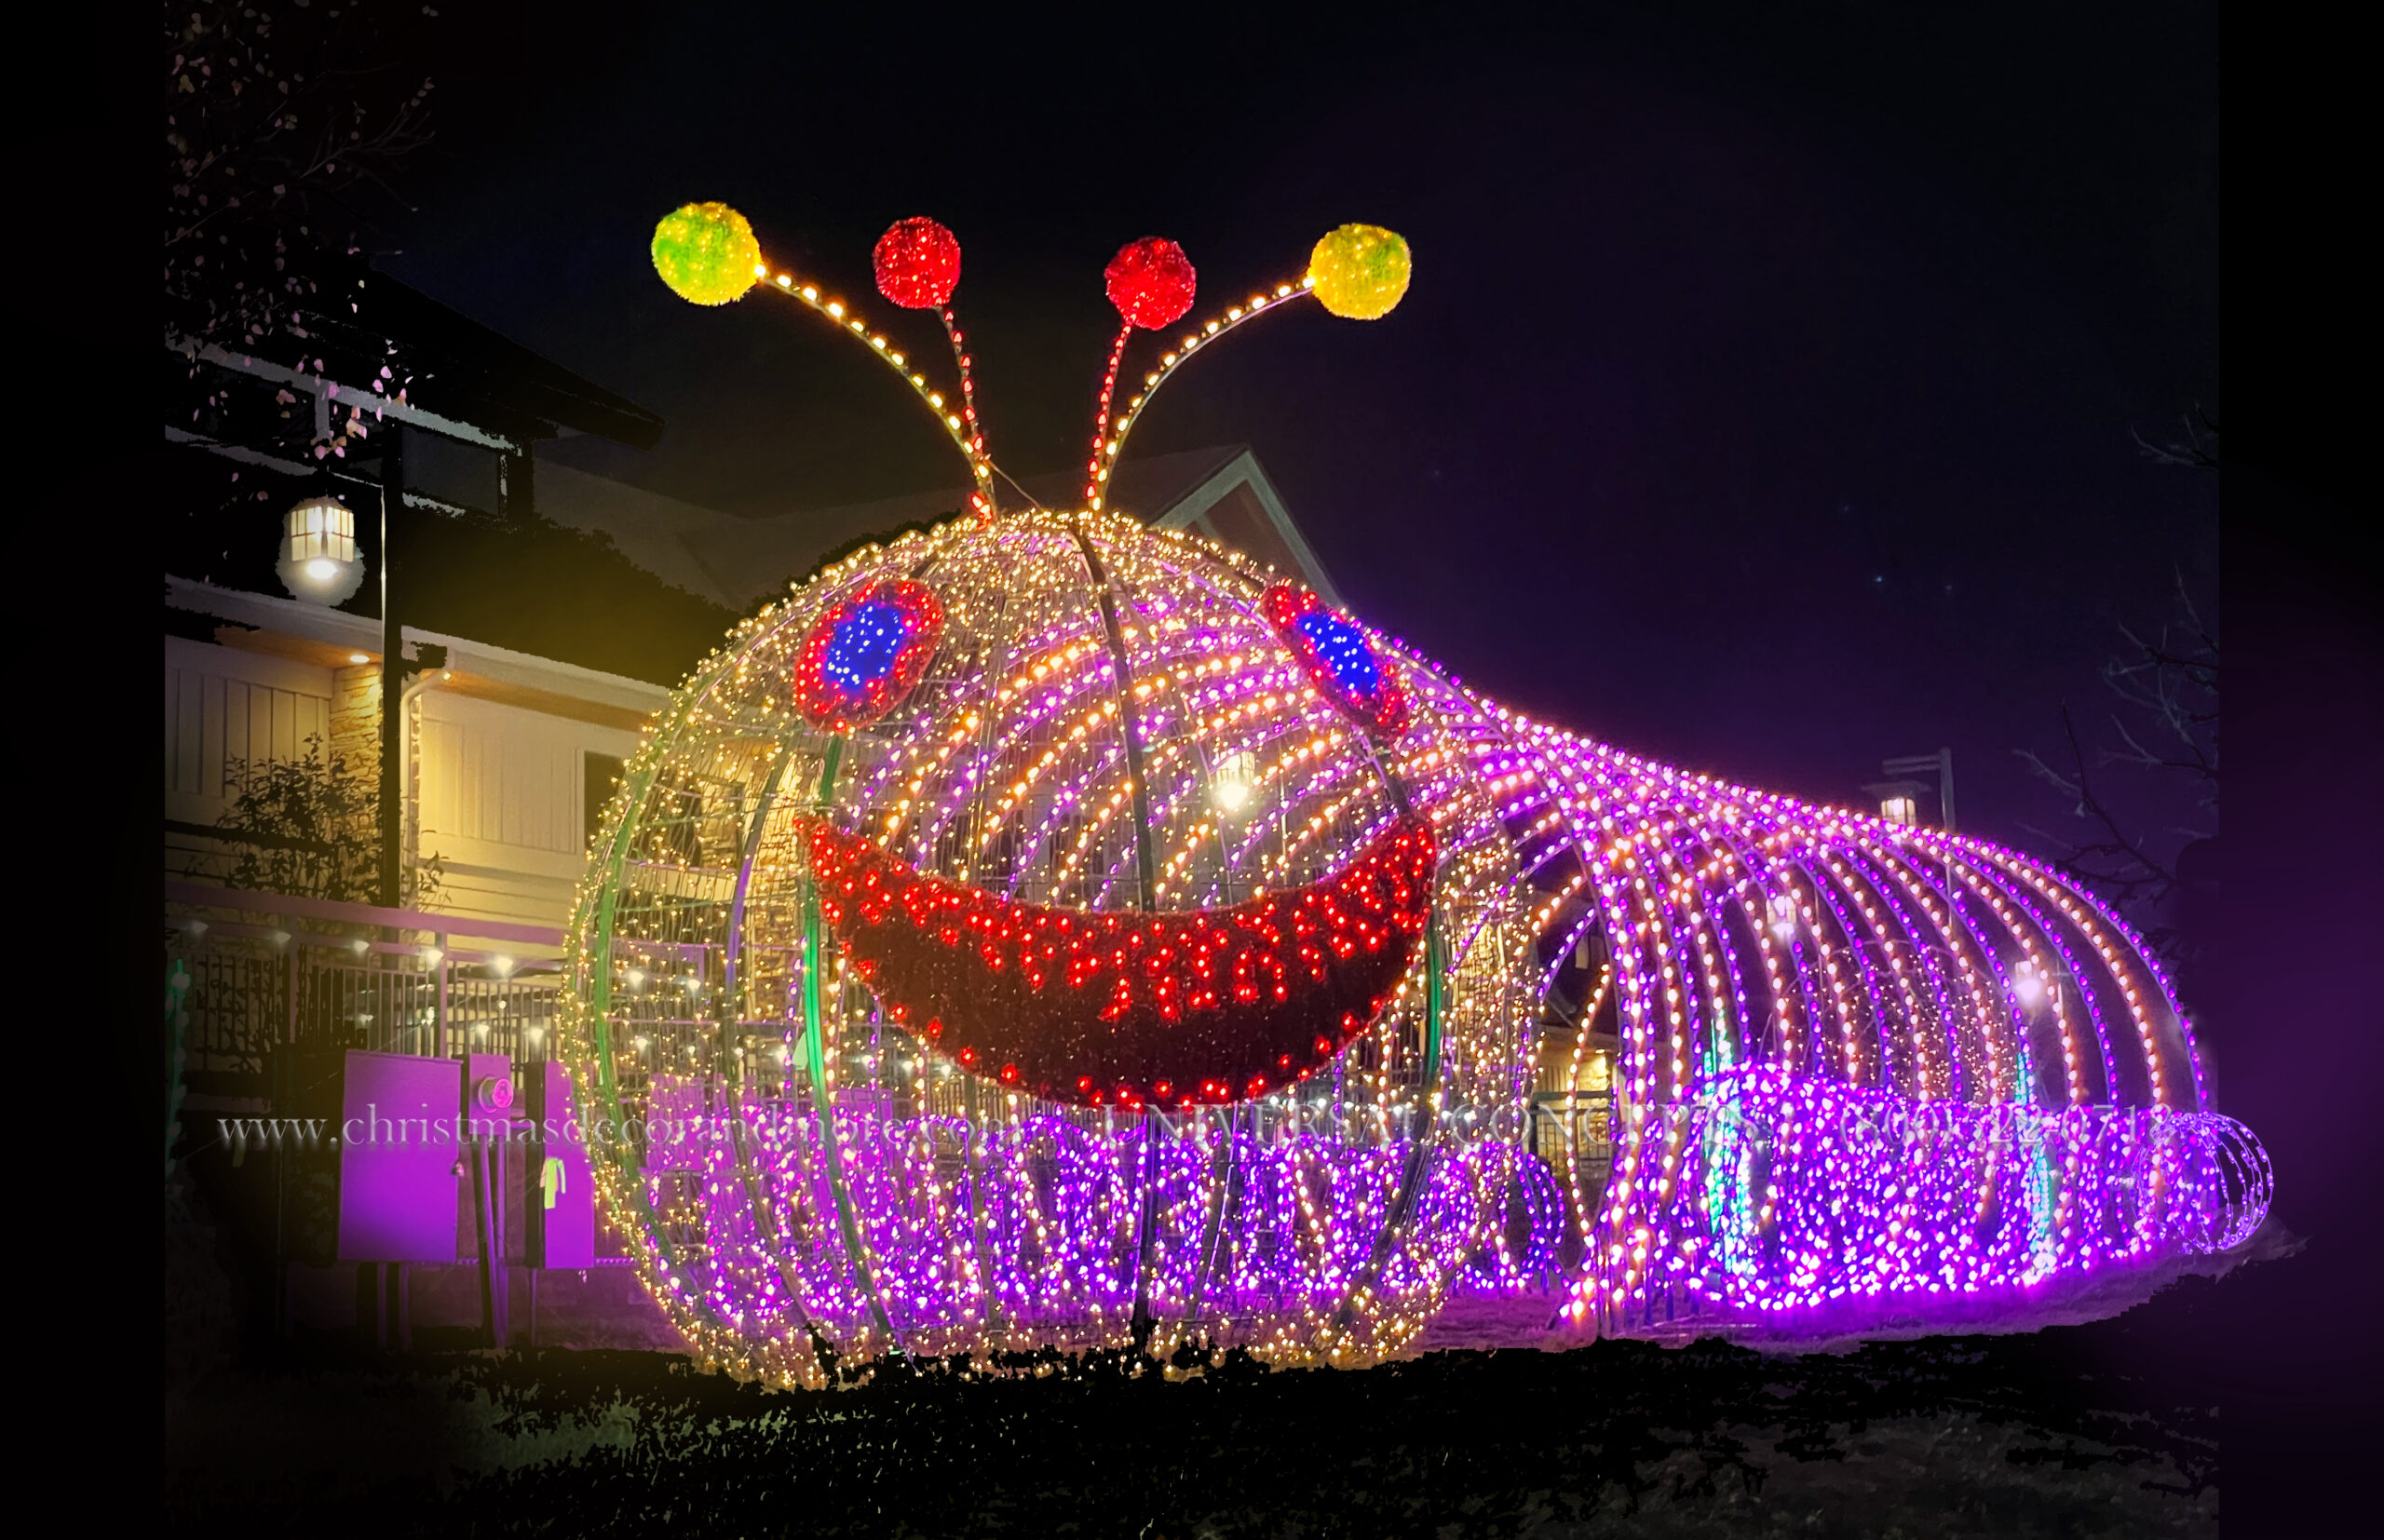 a lighted giant walk-thru caterpillar feature